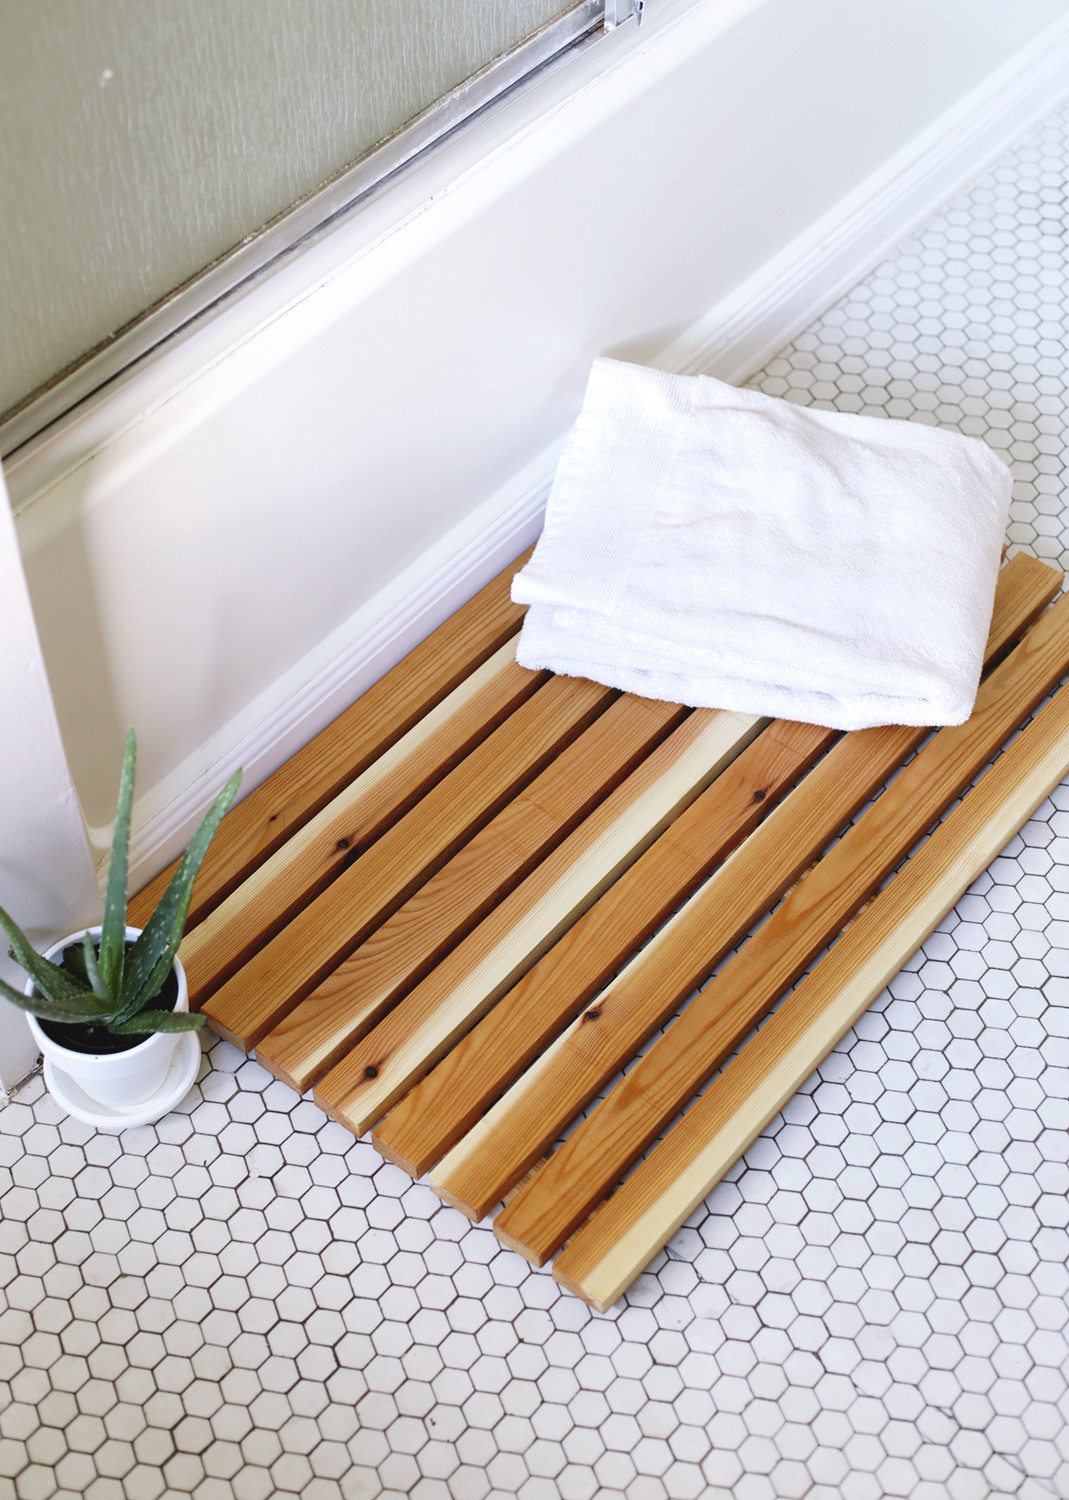 Best ideas about DIY Bathroom Mat
. Save or Pin DIY Cedar Bath Mat The Merrythought Now.